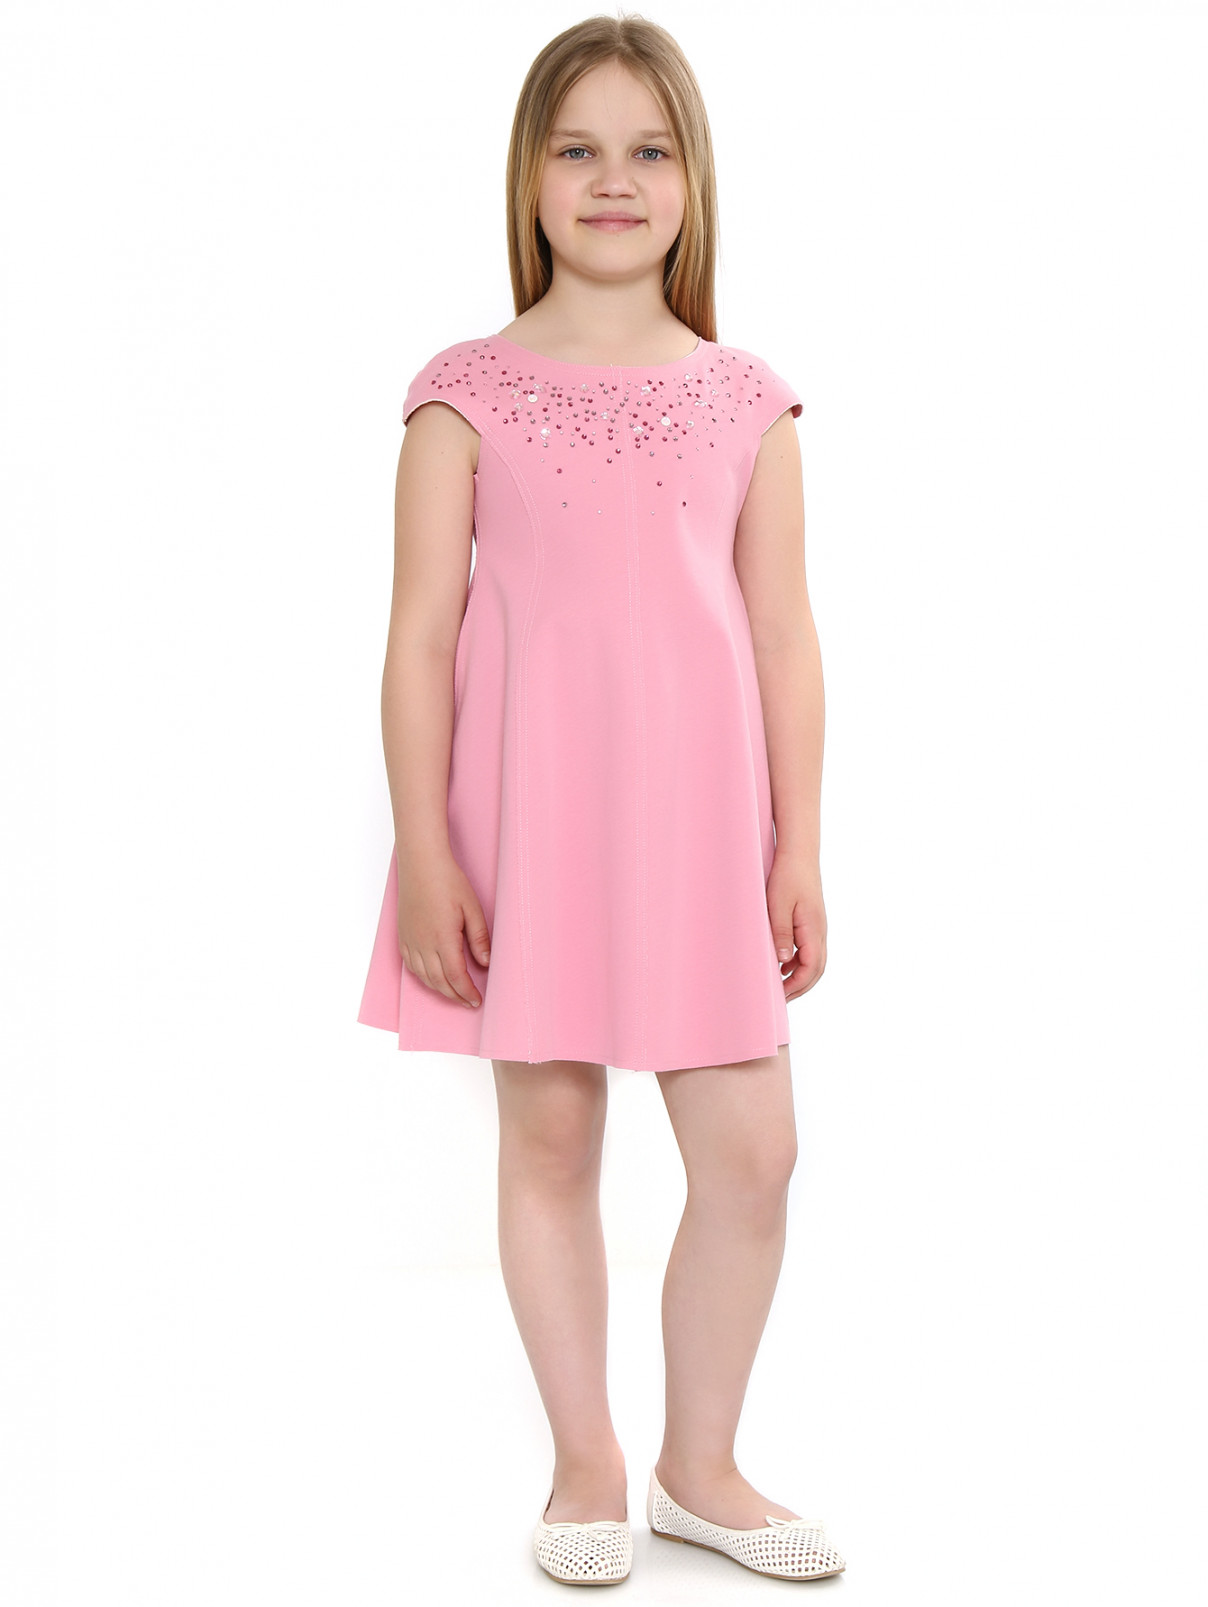 Платье из хлопка с отделкой кристаллами MiMiSol  –  Модель Общий вид  – Цвет:  Розовый